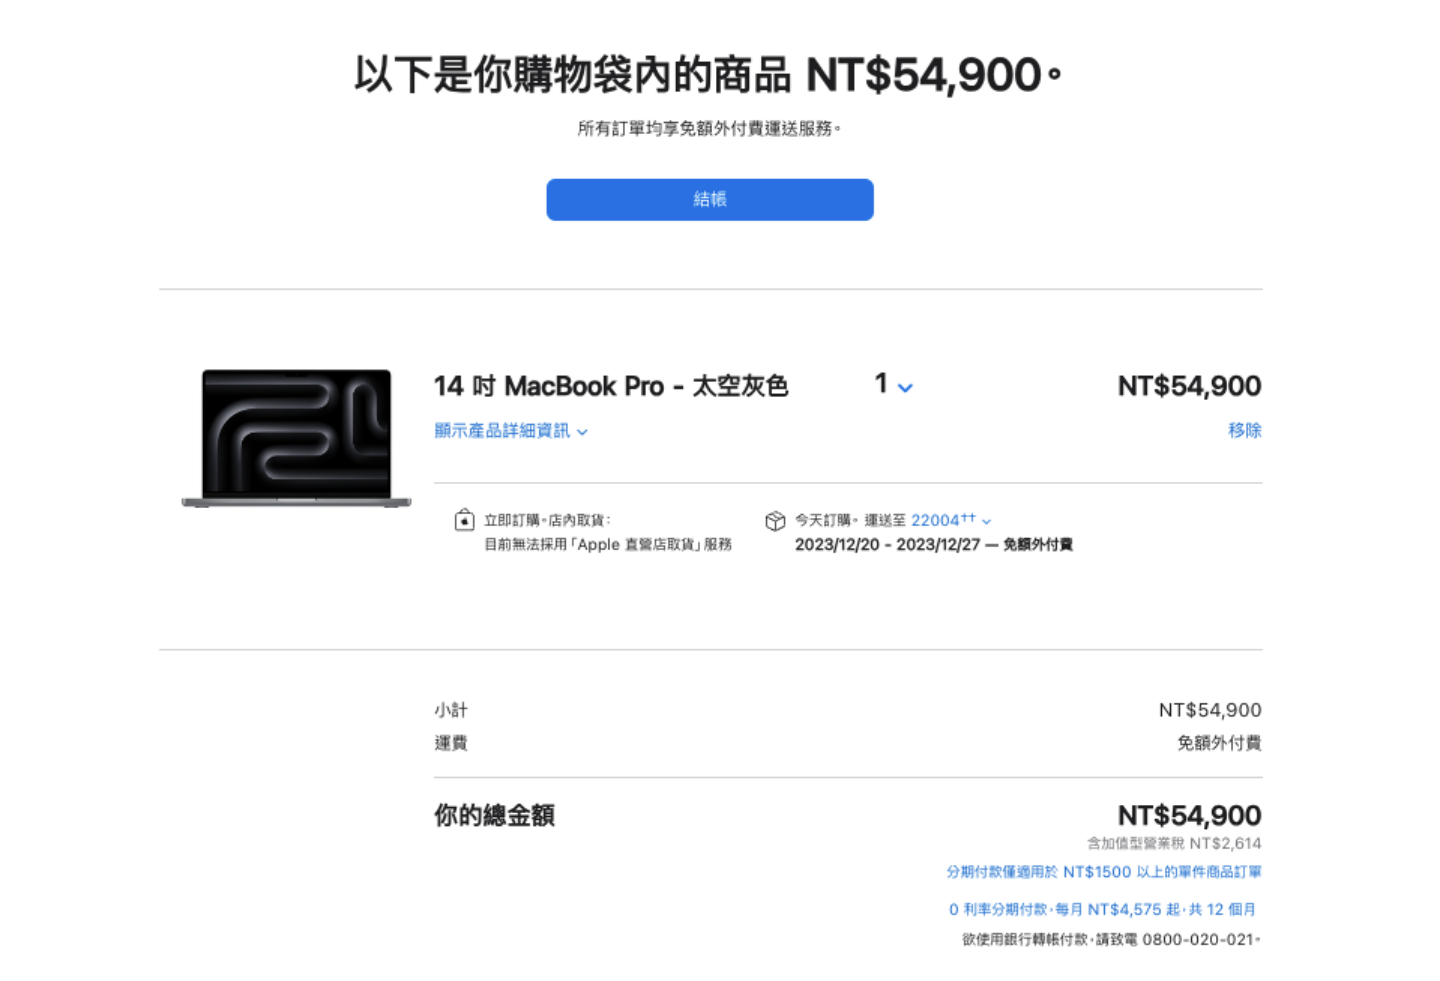 搭载 M3 系列晶片的 MacBook Pro 在中国台湾开卖！售价新台币 54,900 元起，订购最快 12/20 可到货